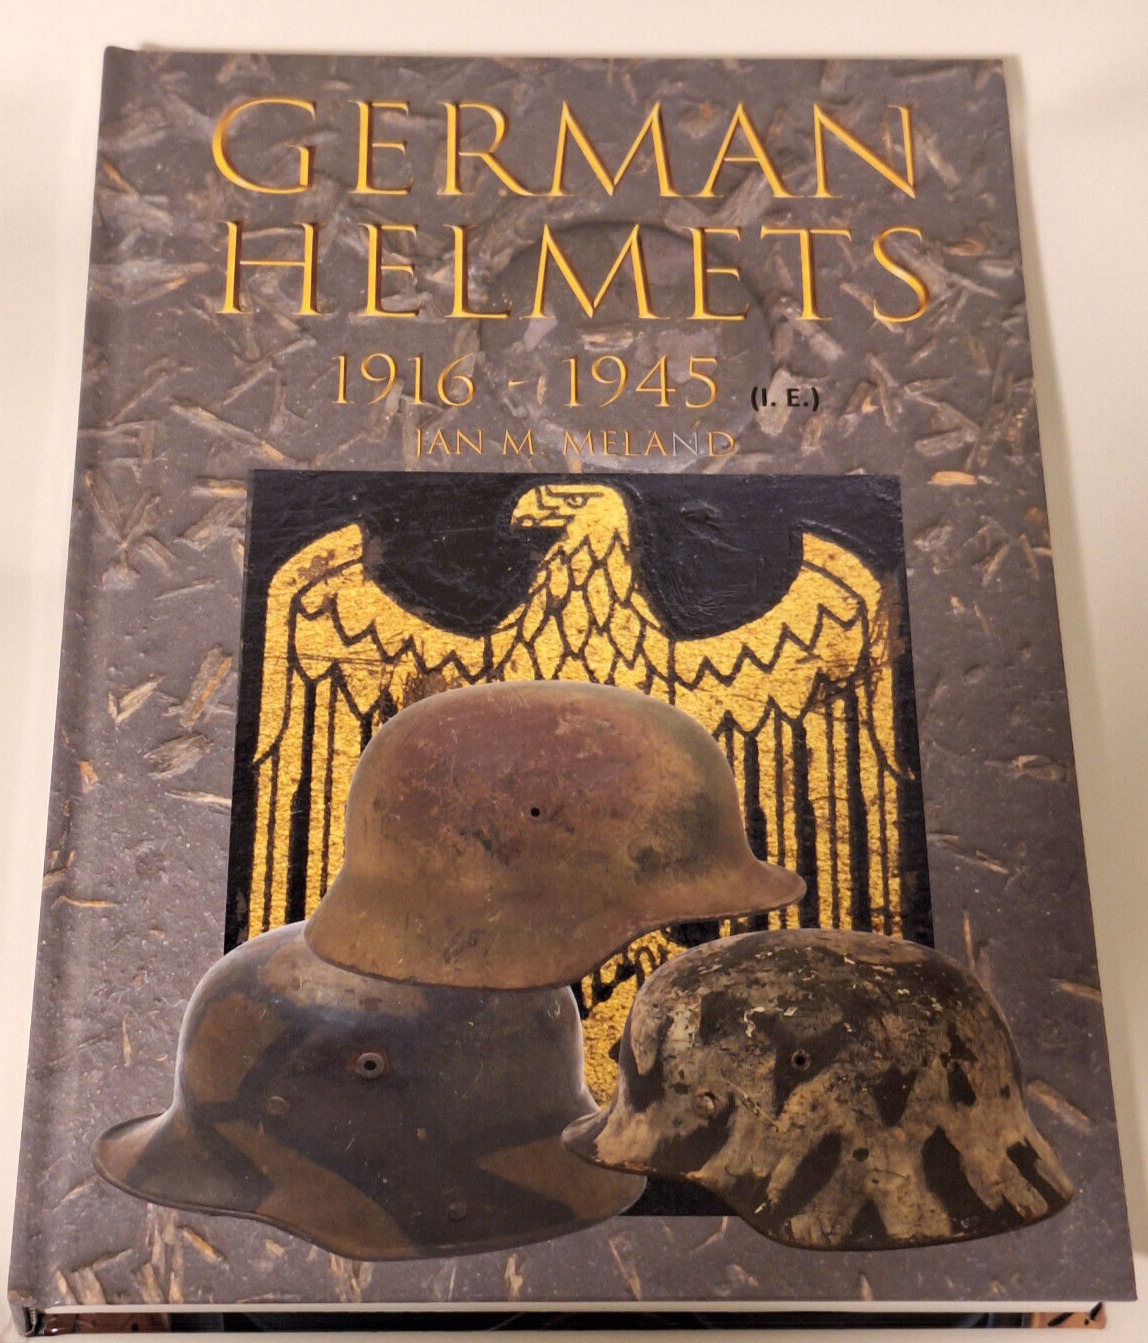 Meland German helmets 1916-1945 helmet steel helmet evaluation book steel helmet